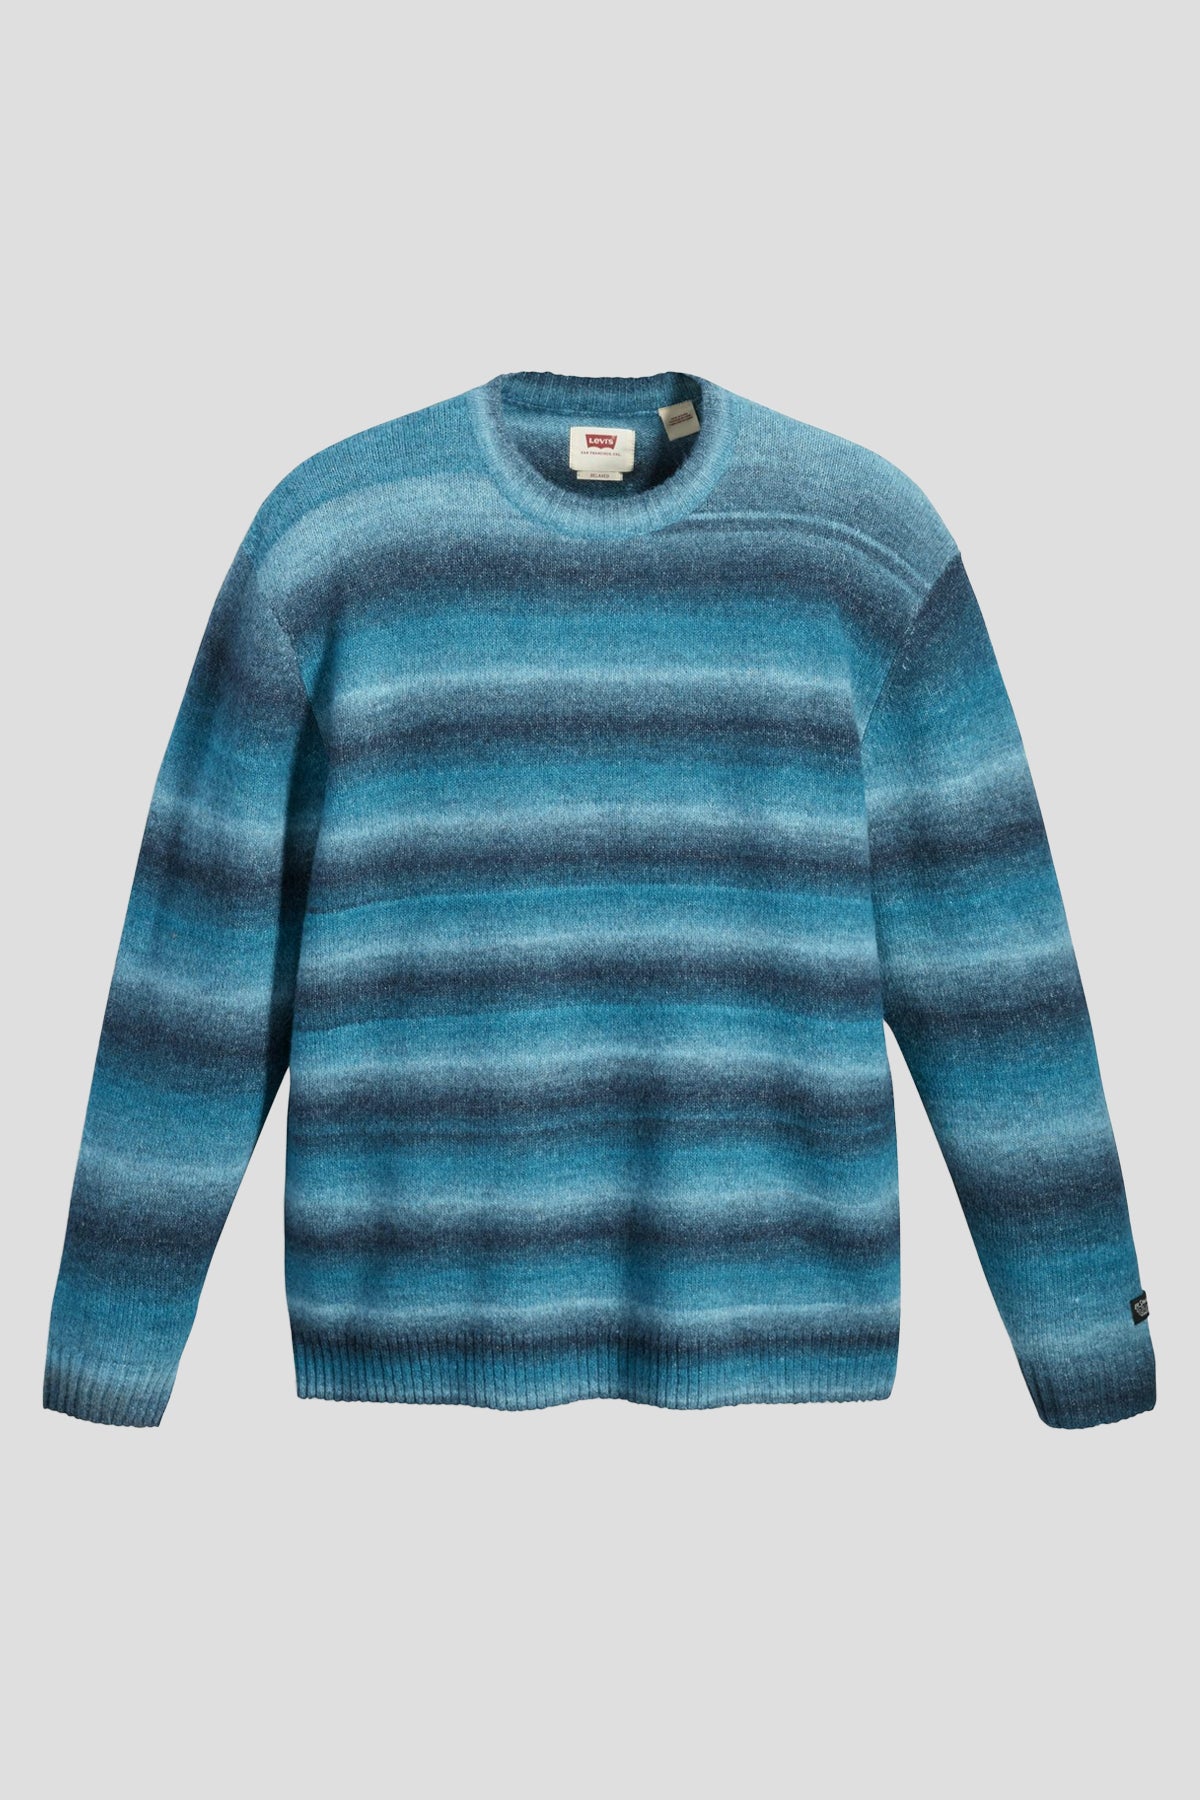 Space Dye Battery Sweater